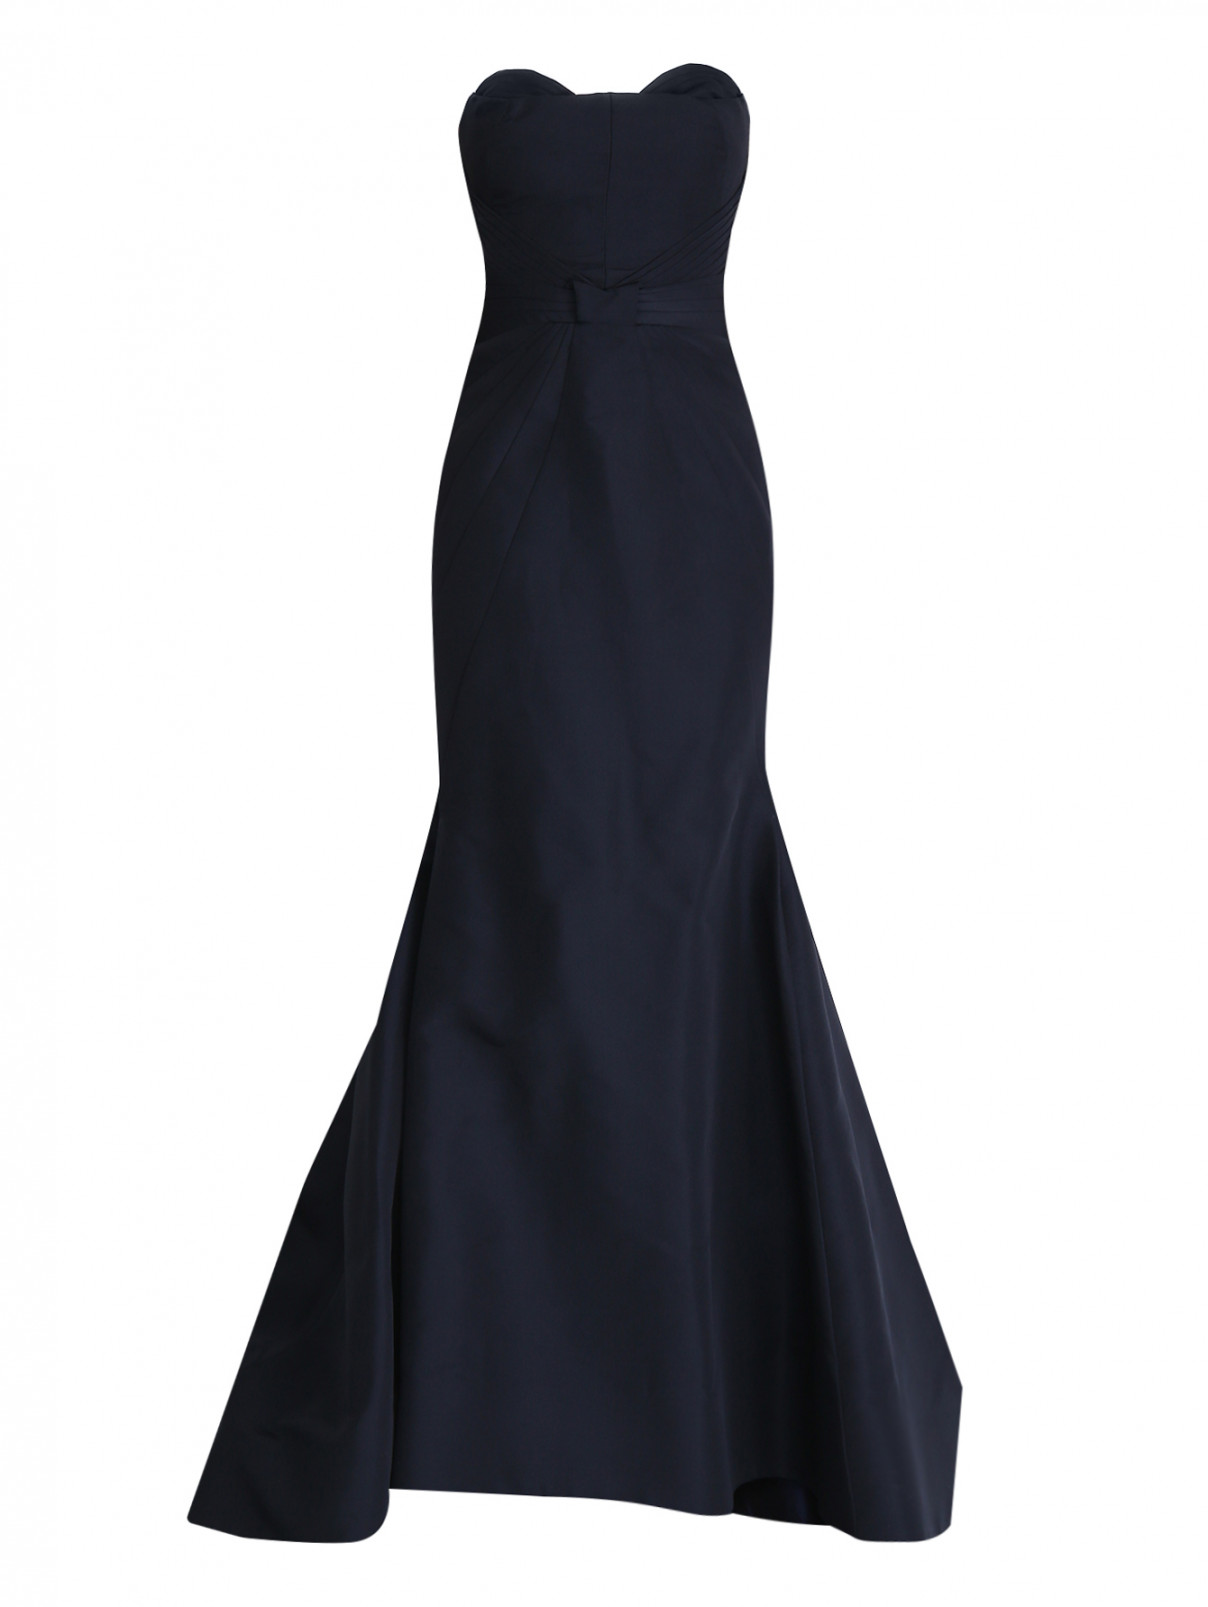 Платье с корсетом и юбкой "русалка" Zac Posen  –  Общий вид  – Цвет:  Черный